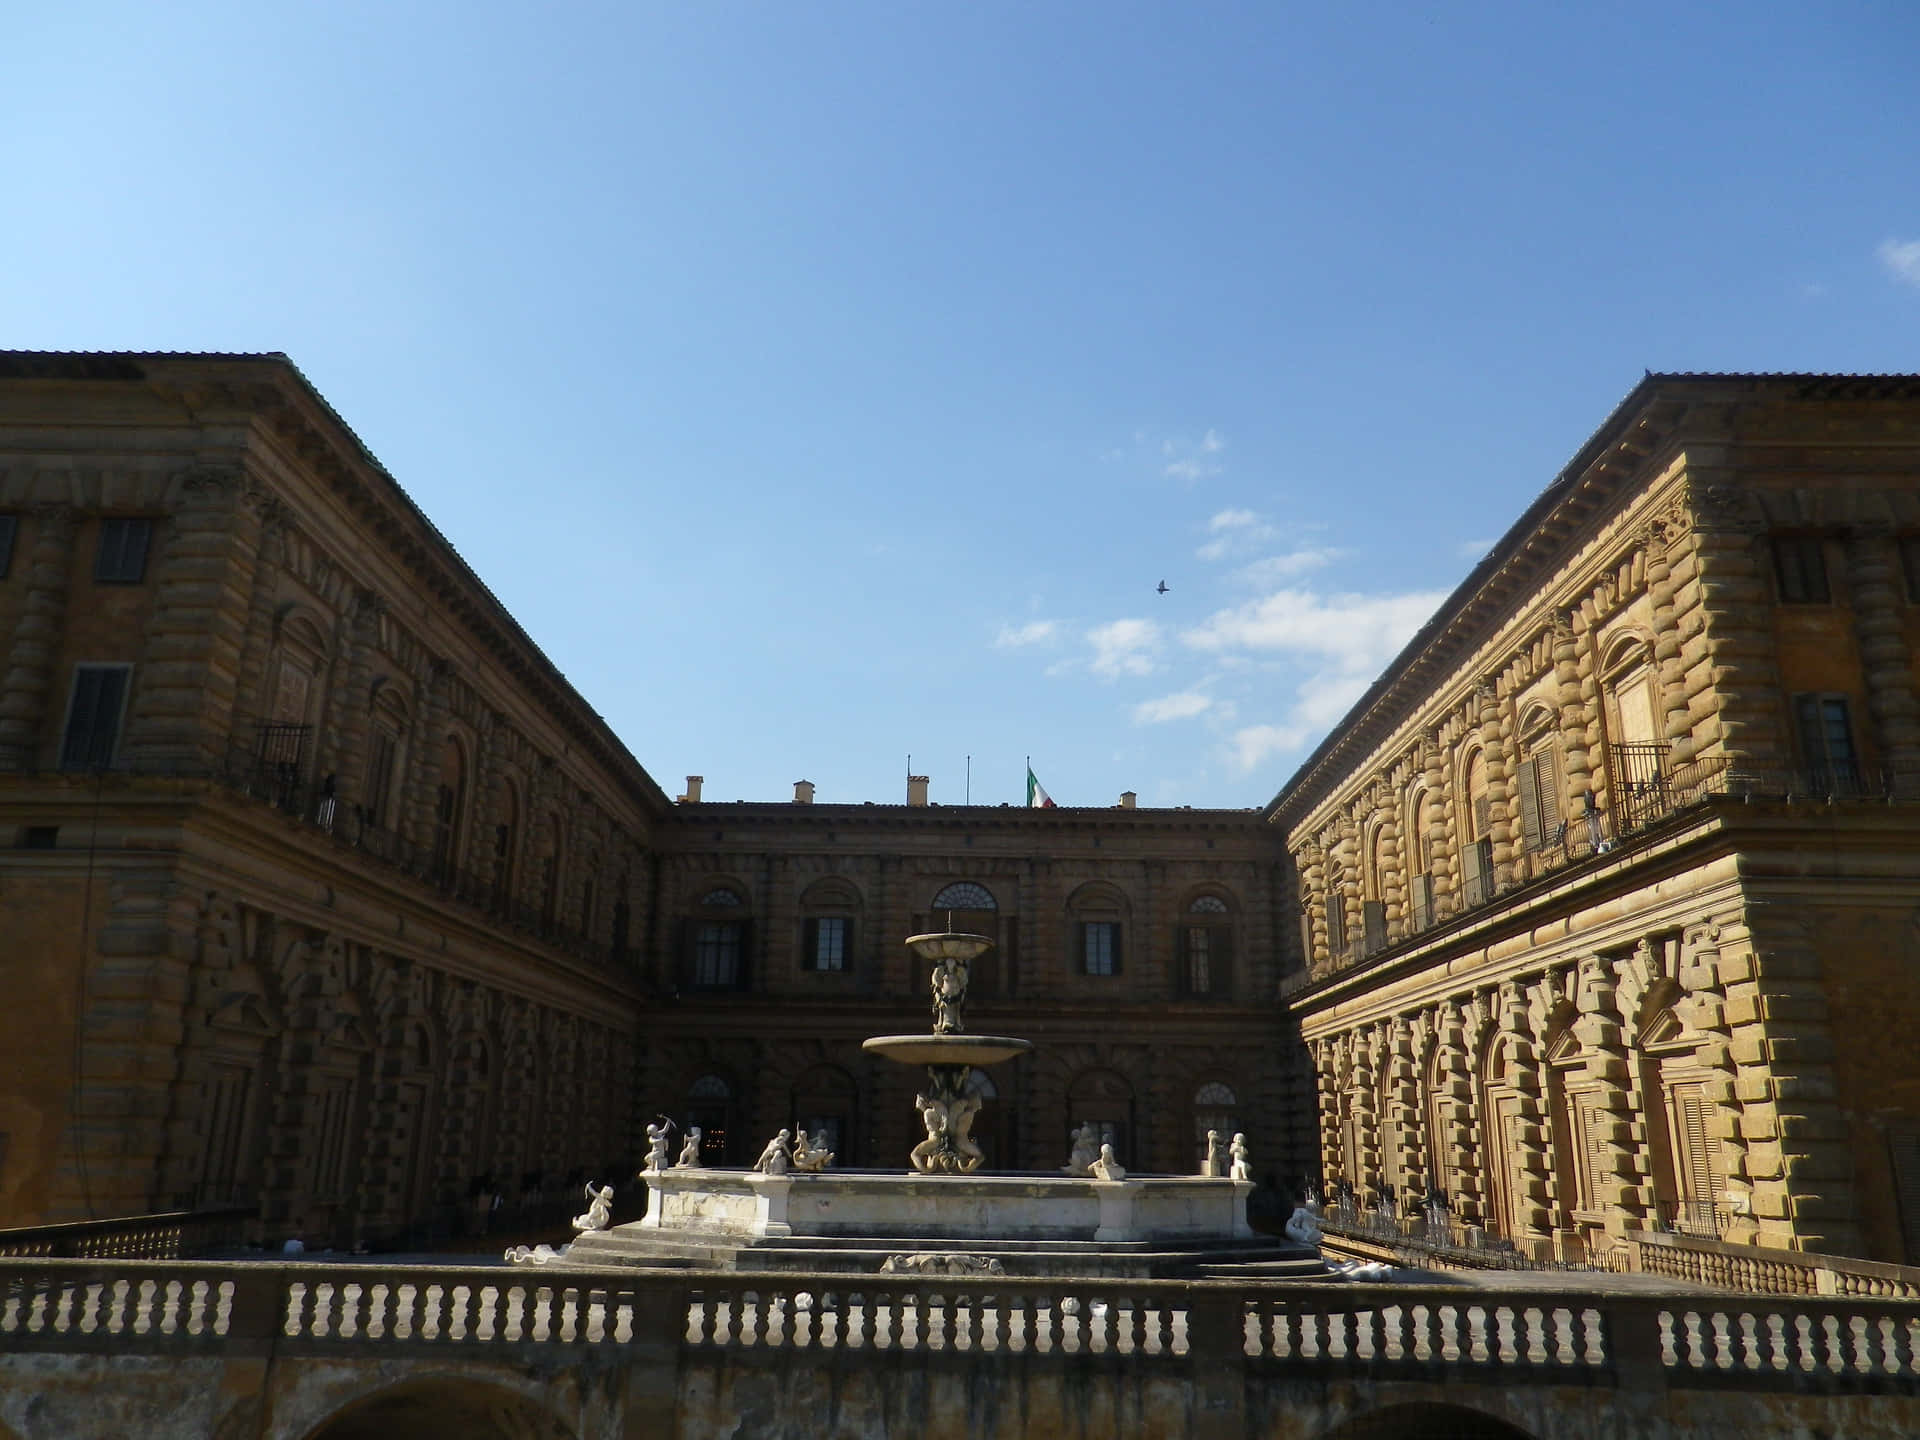 Palazzo Pitti 4608 X 3456 Wallpaper